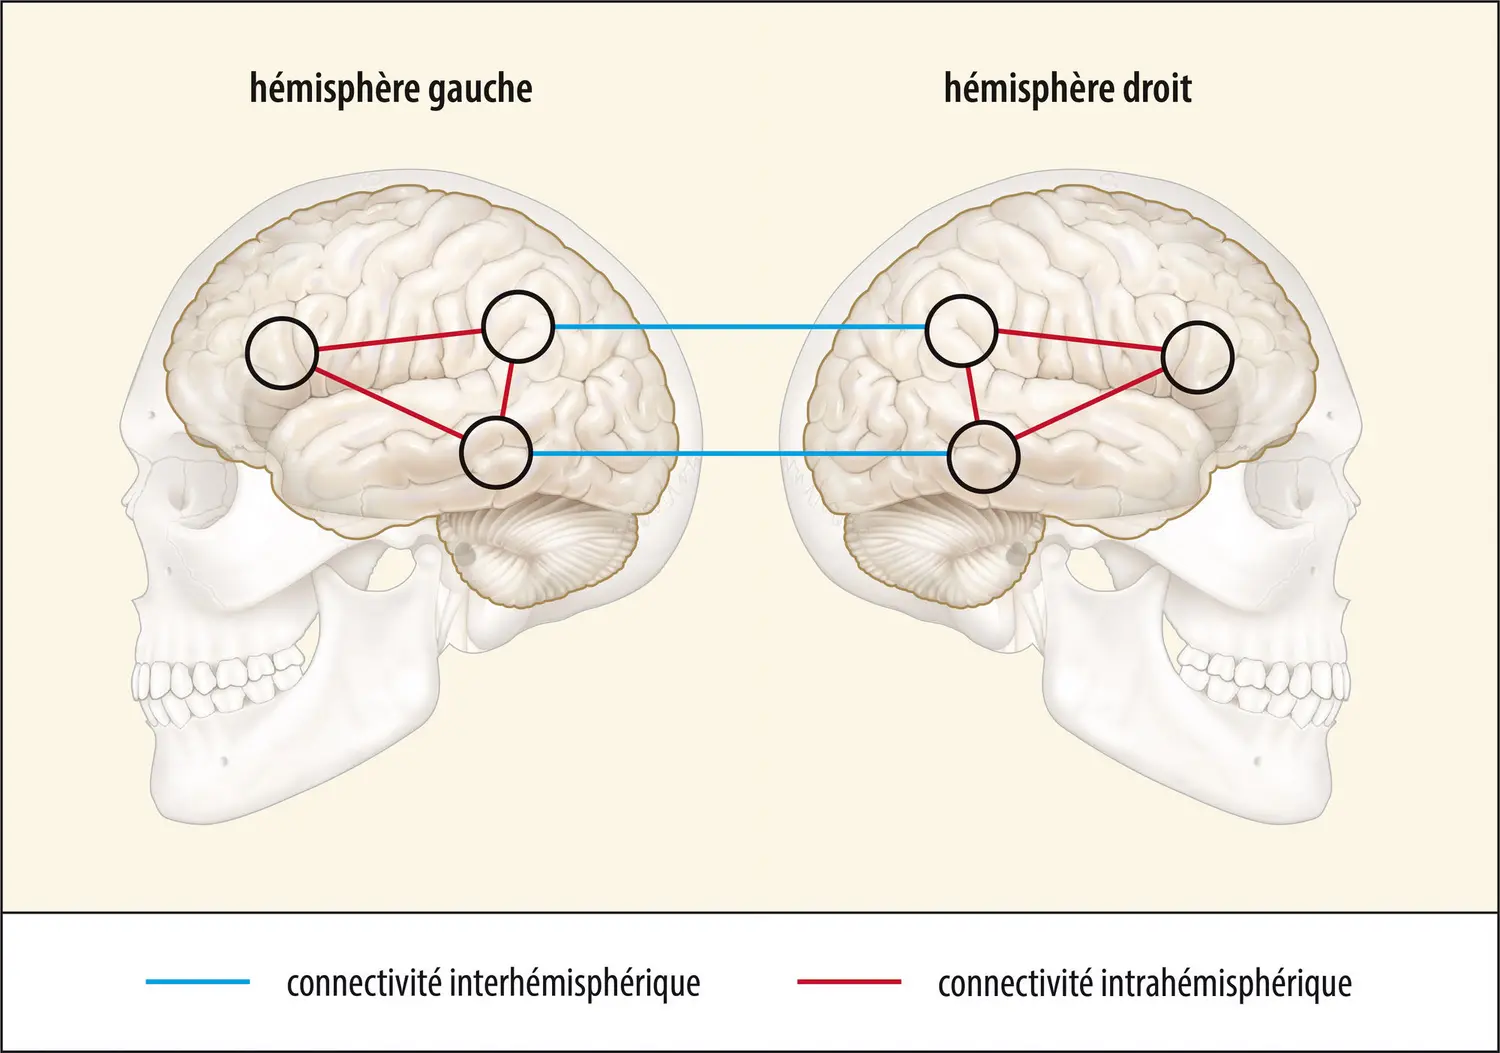 Schématisation de la connectivité intra- et interhémisphérique dans le cerveau